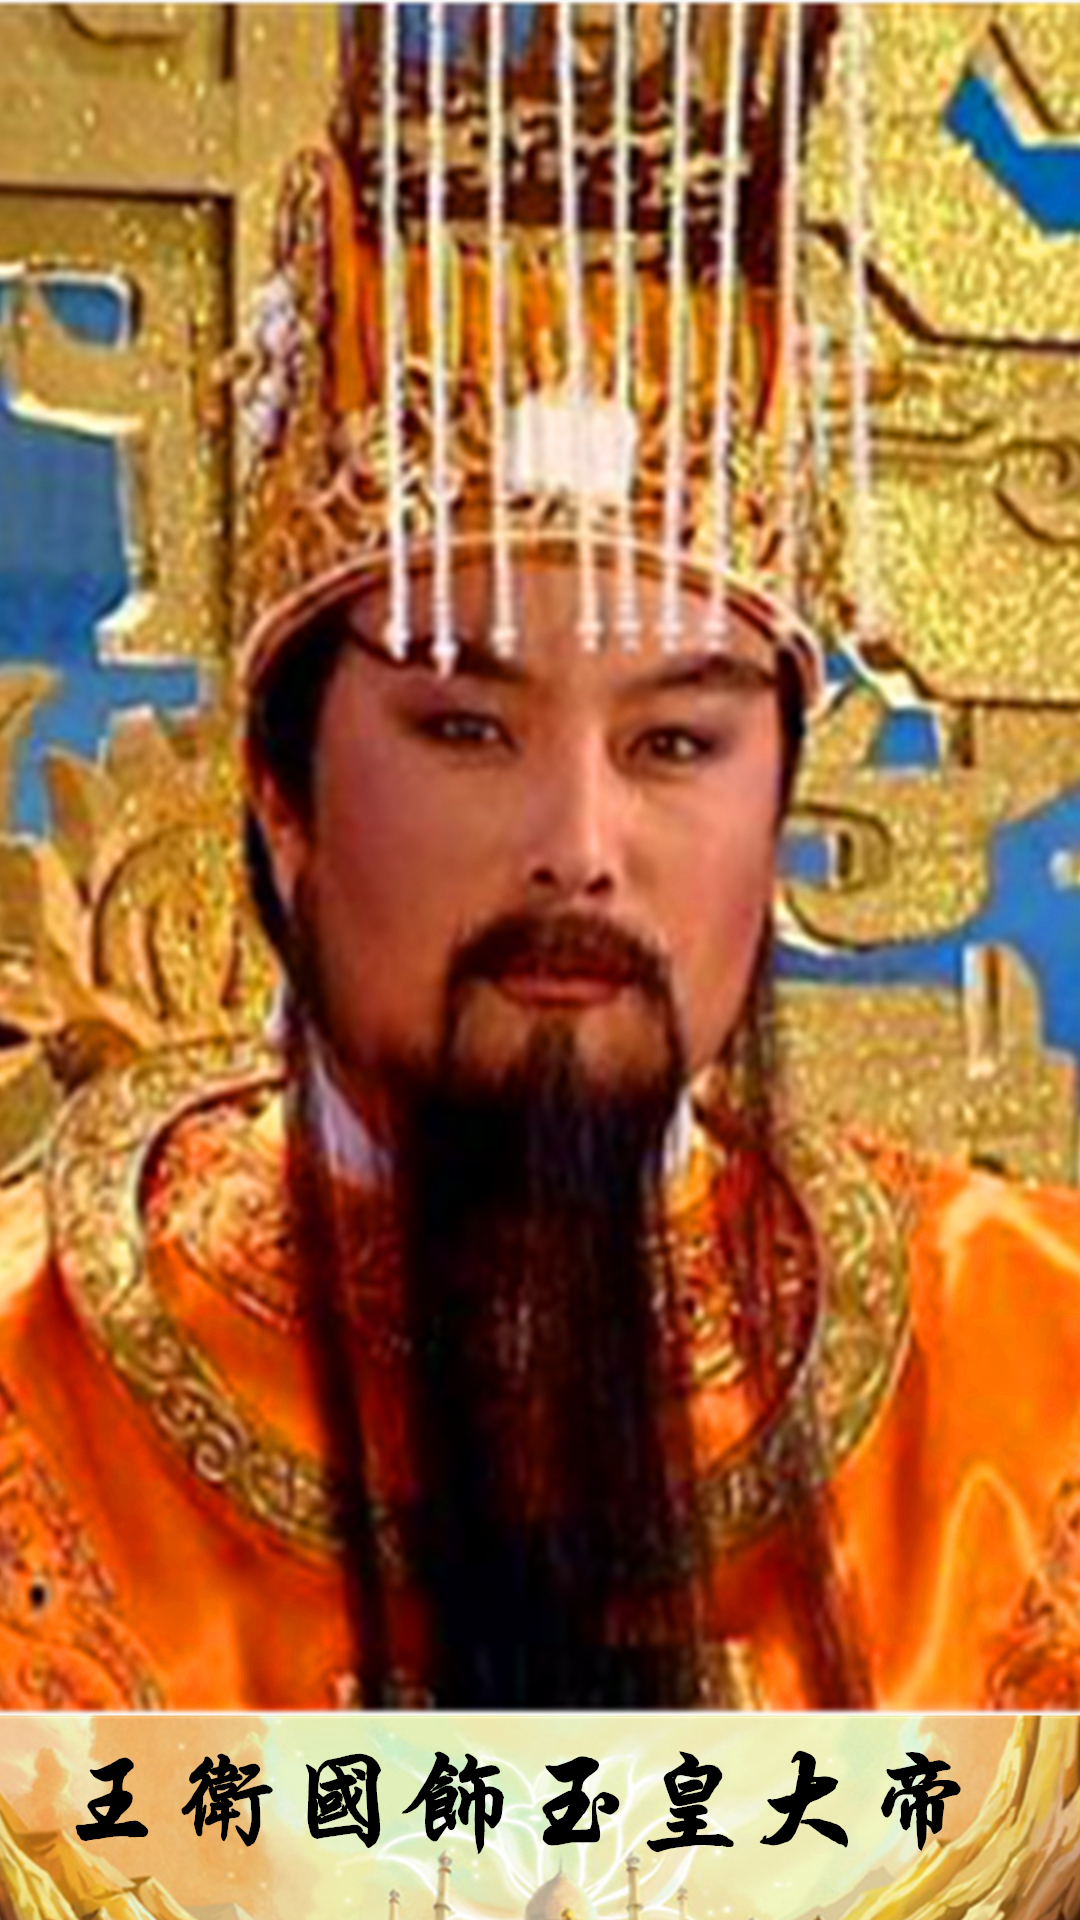 2000《西游记续集》中玉皇大帝,由国家一级演员王卫国饰演.